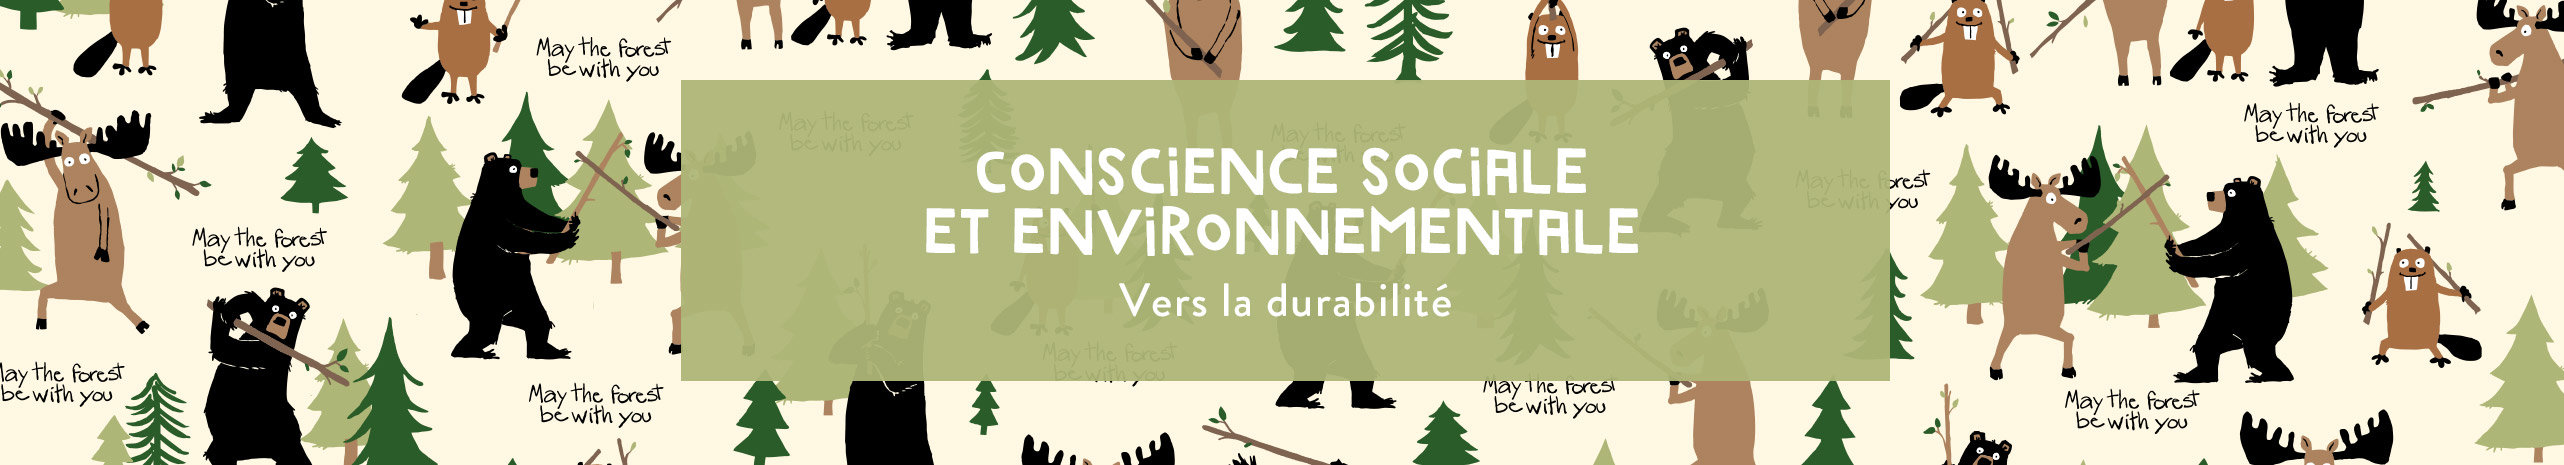 Conscience sociale et environnementale